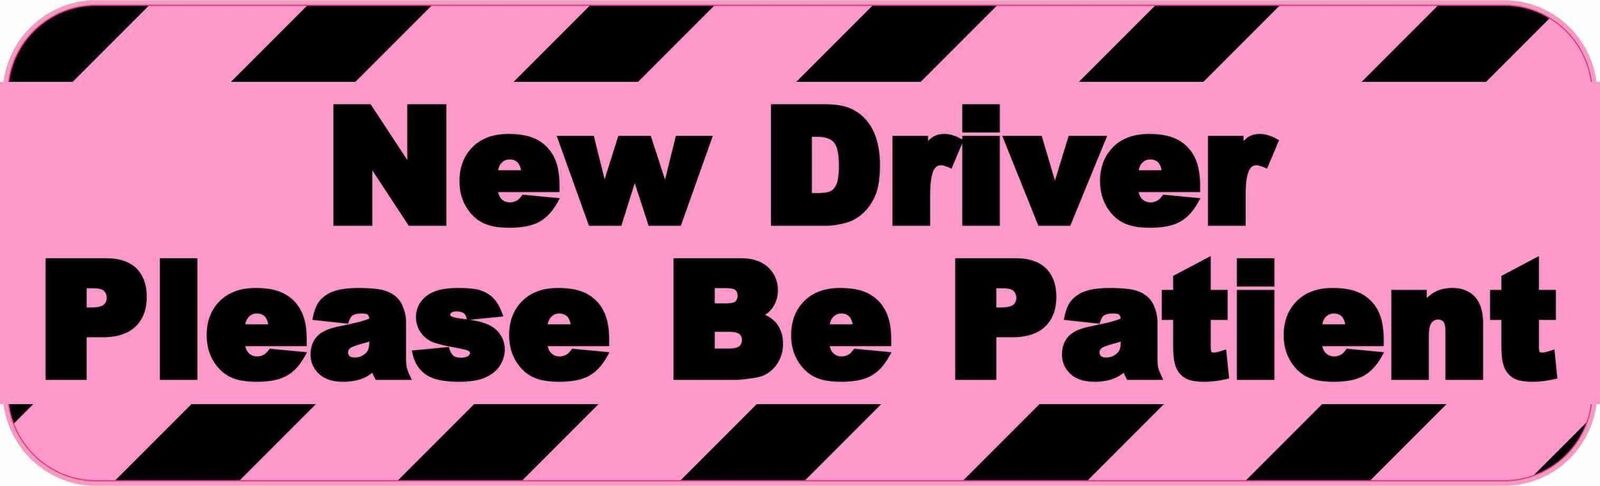 10x3 Pink New Driver Please Be Patient Bumper Sticker Vehicle Door Window Decal